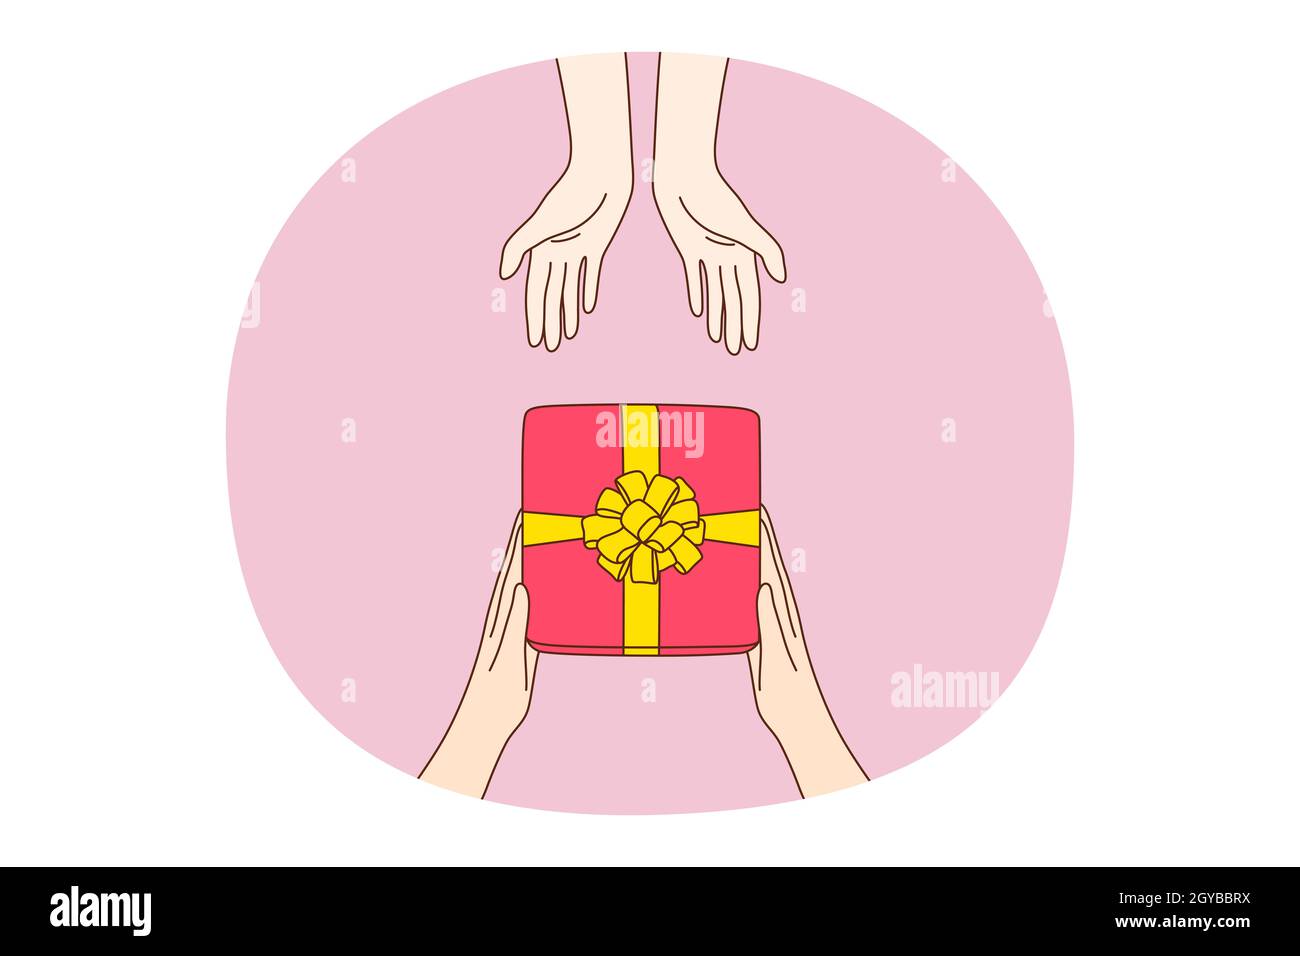 Geschenk, Geschenk, Überraschungskonzept. Menschliche Hände geben und nehmen Urlaub festliche Geschenk-Box in rot eingewickeltem Papier mit Band, Draufsicht. Geburtsda Stockfoto